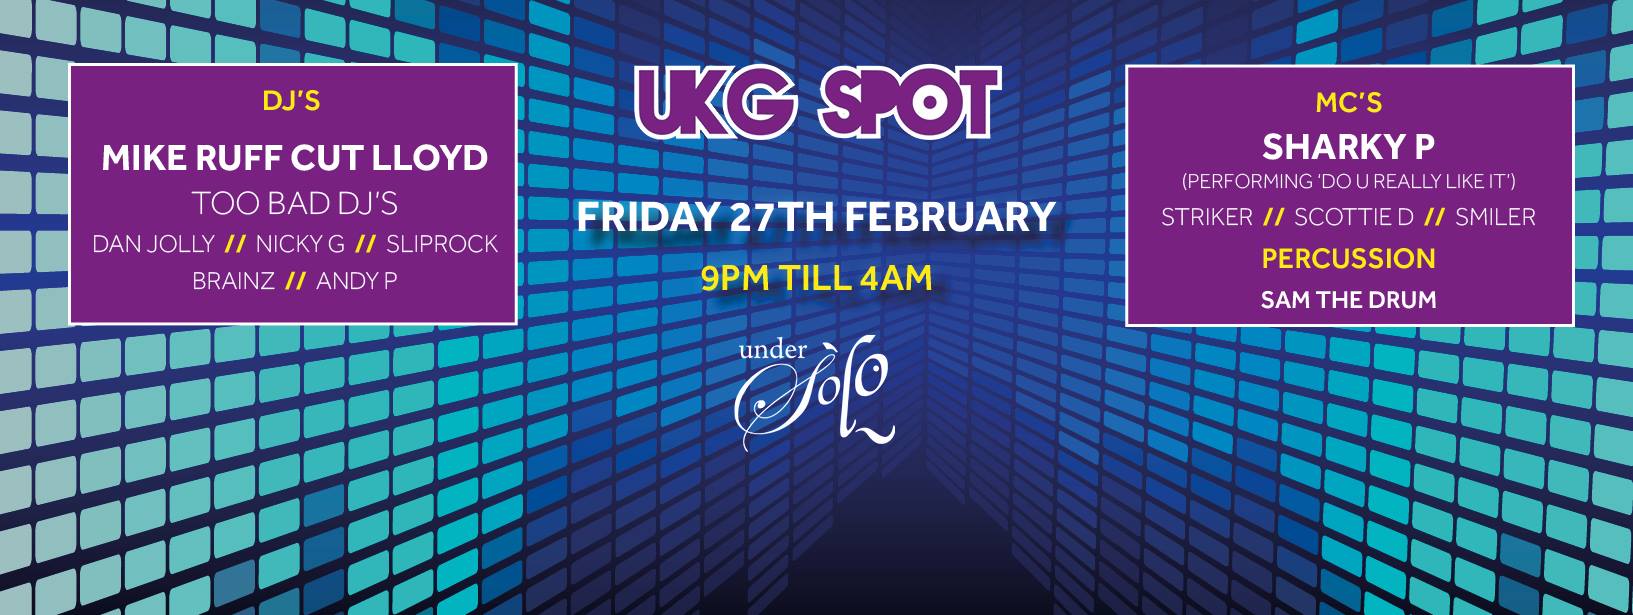 UKG Spot Feb 2015